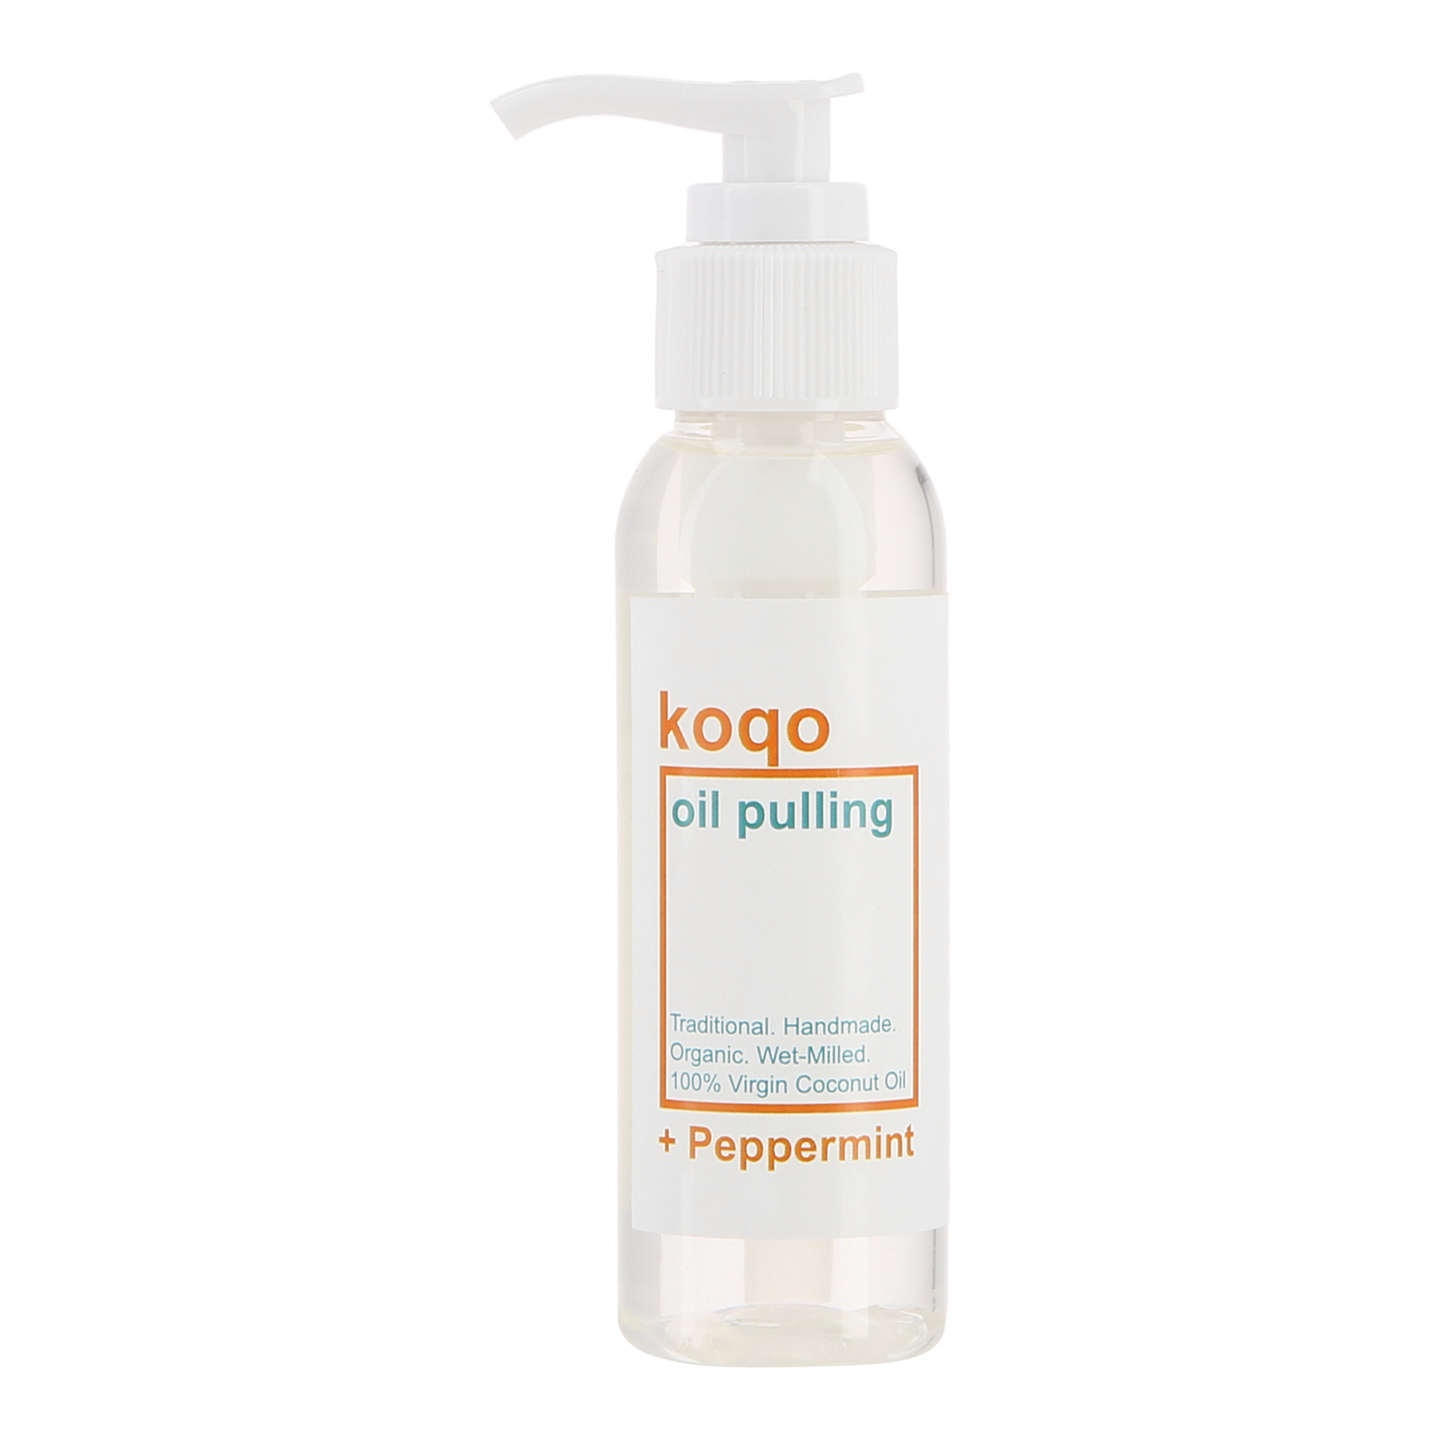 koqo Natural Mouthwash - Peppermint OIL PULLING 100ml pump